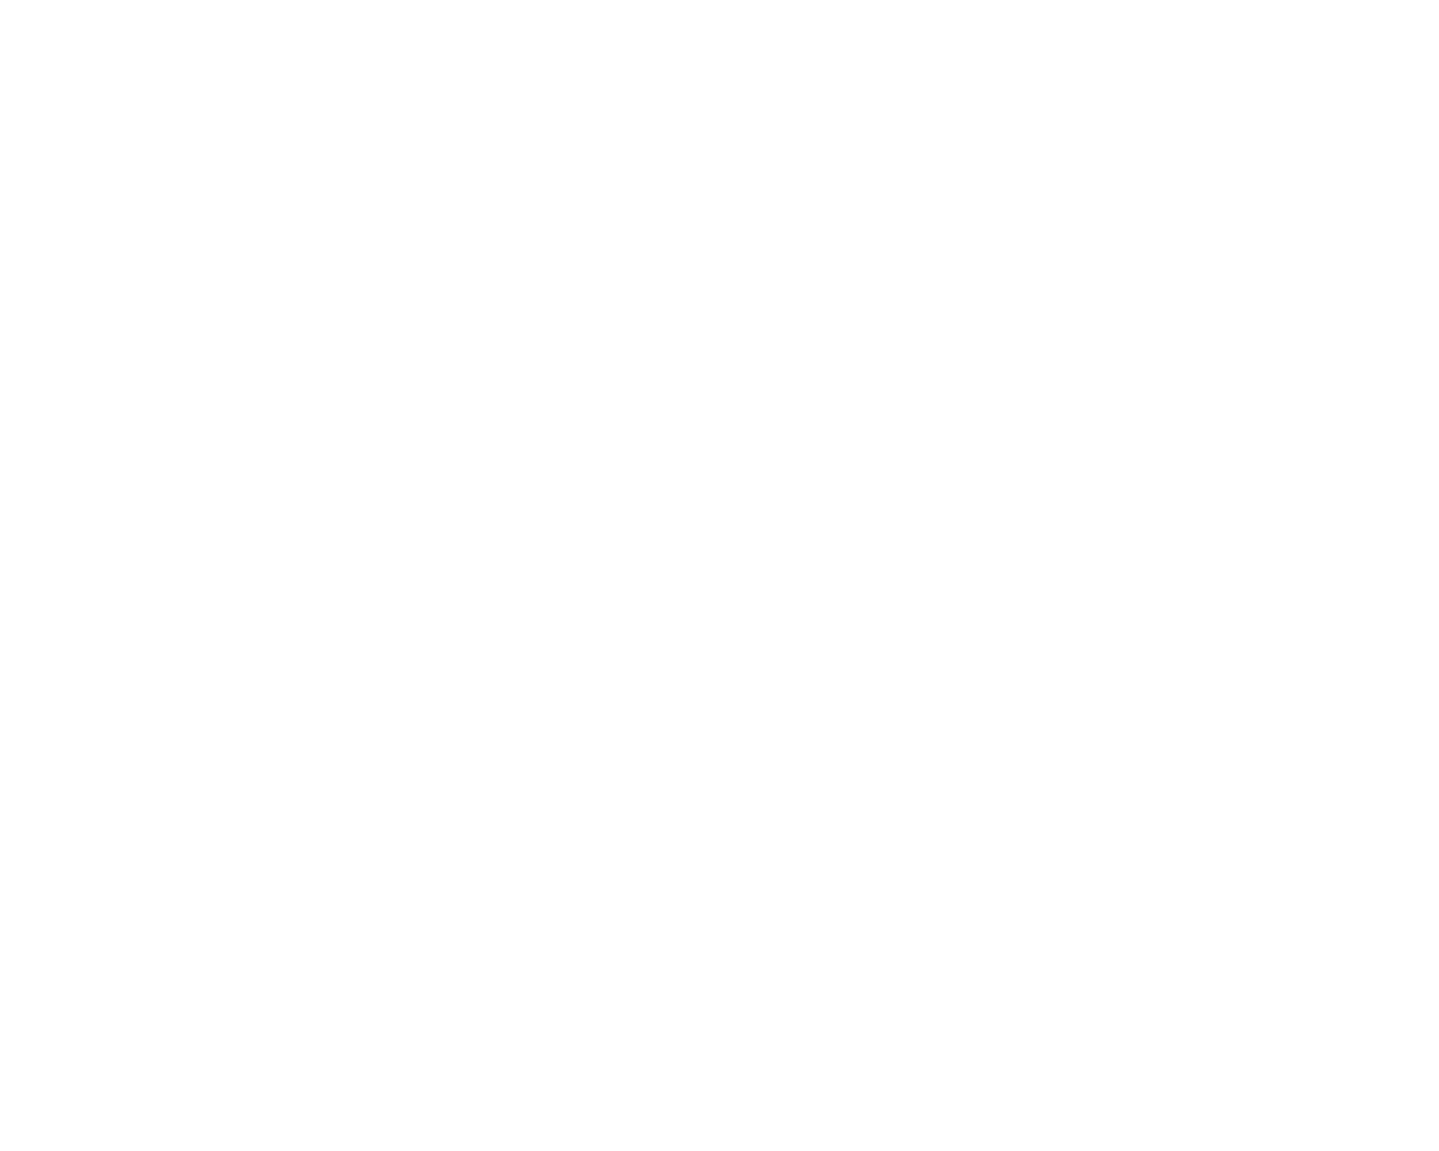 Le Village by CA Milano_negativo